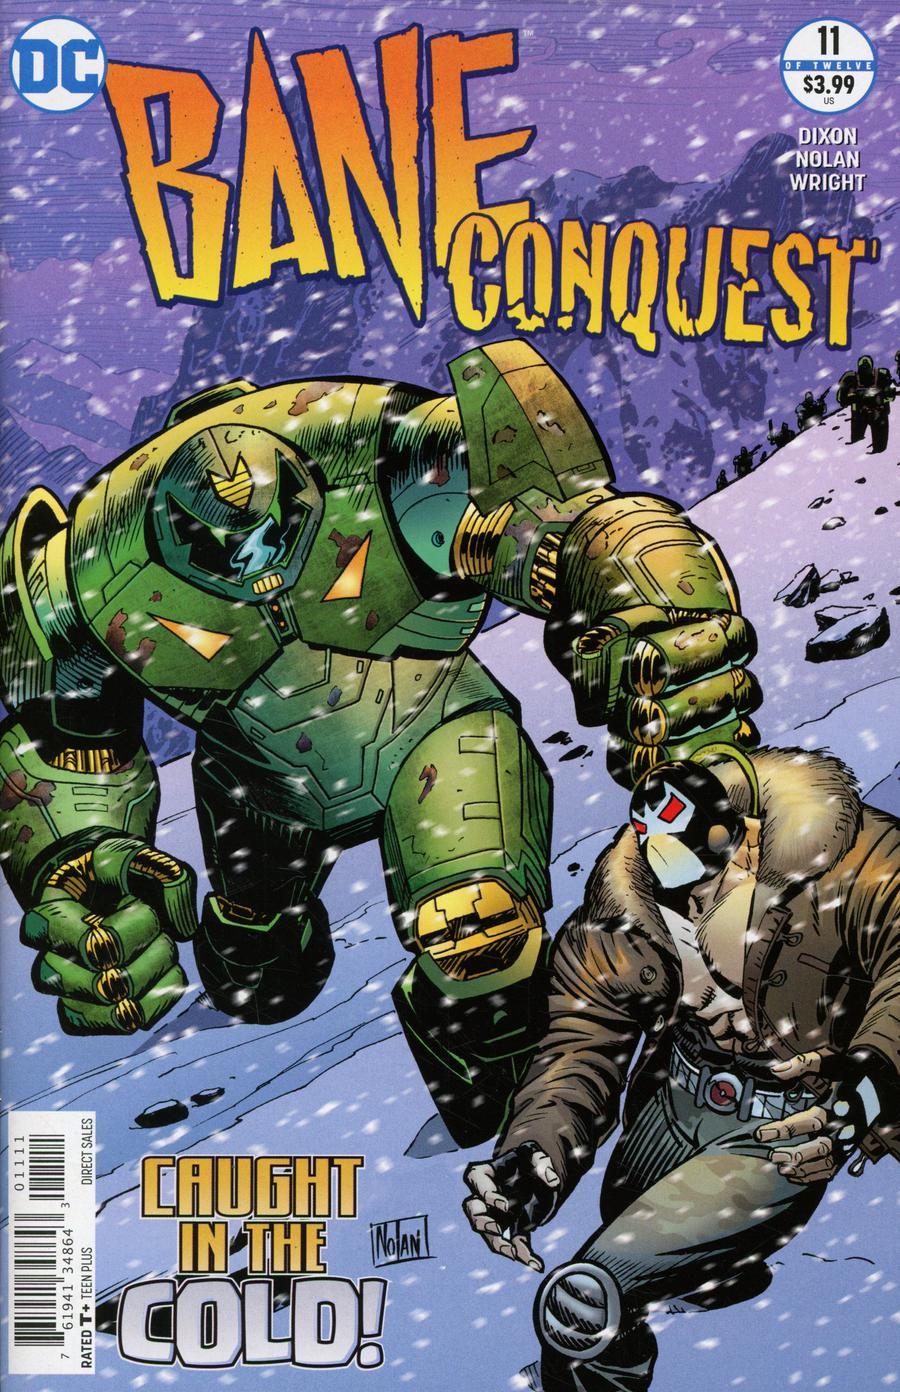 Bane Conquest Vol. 1 #11